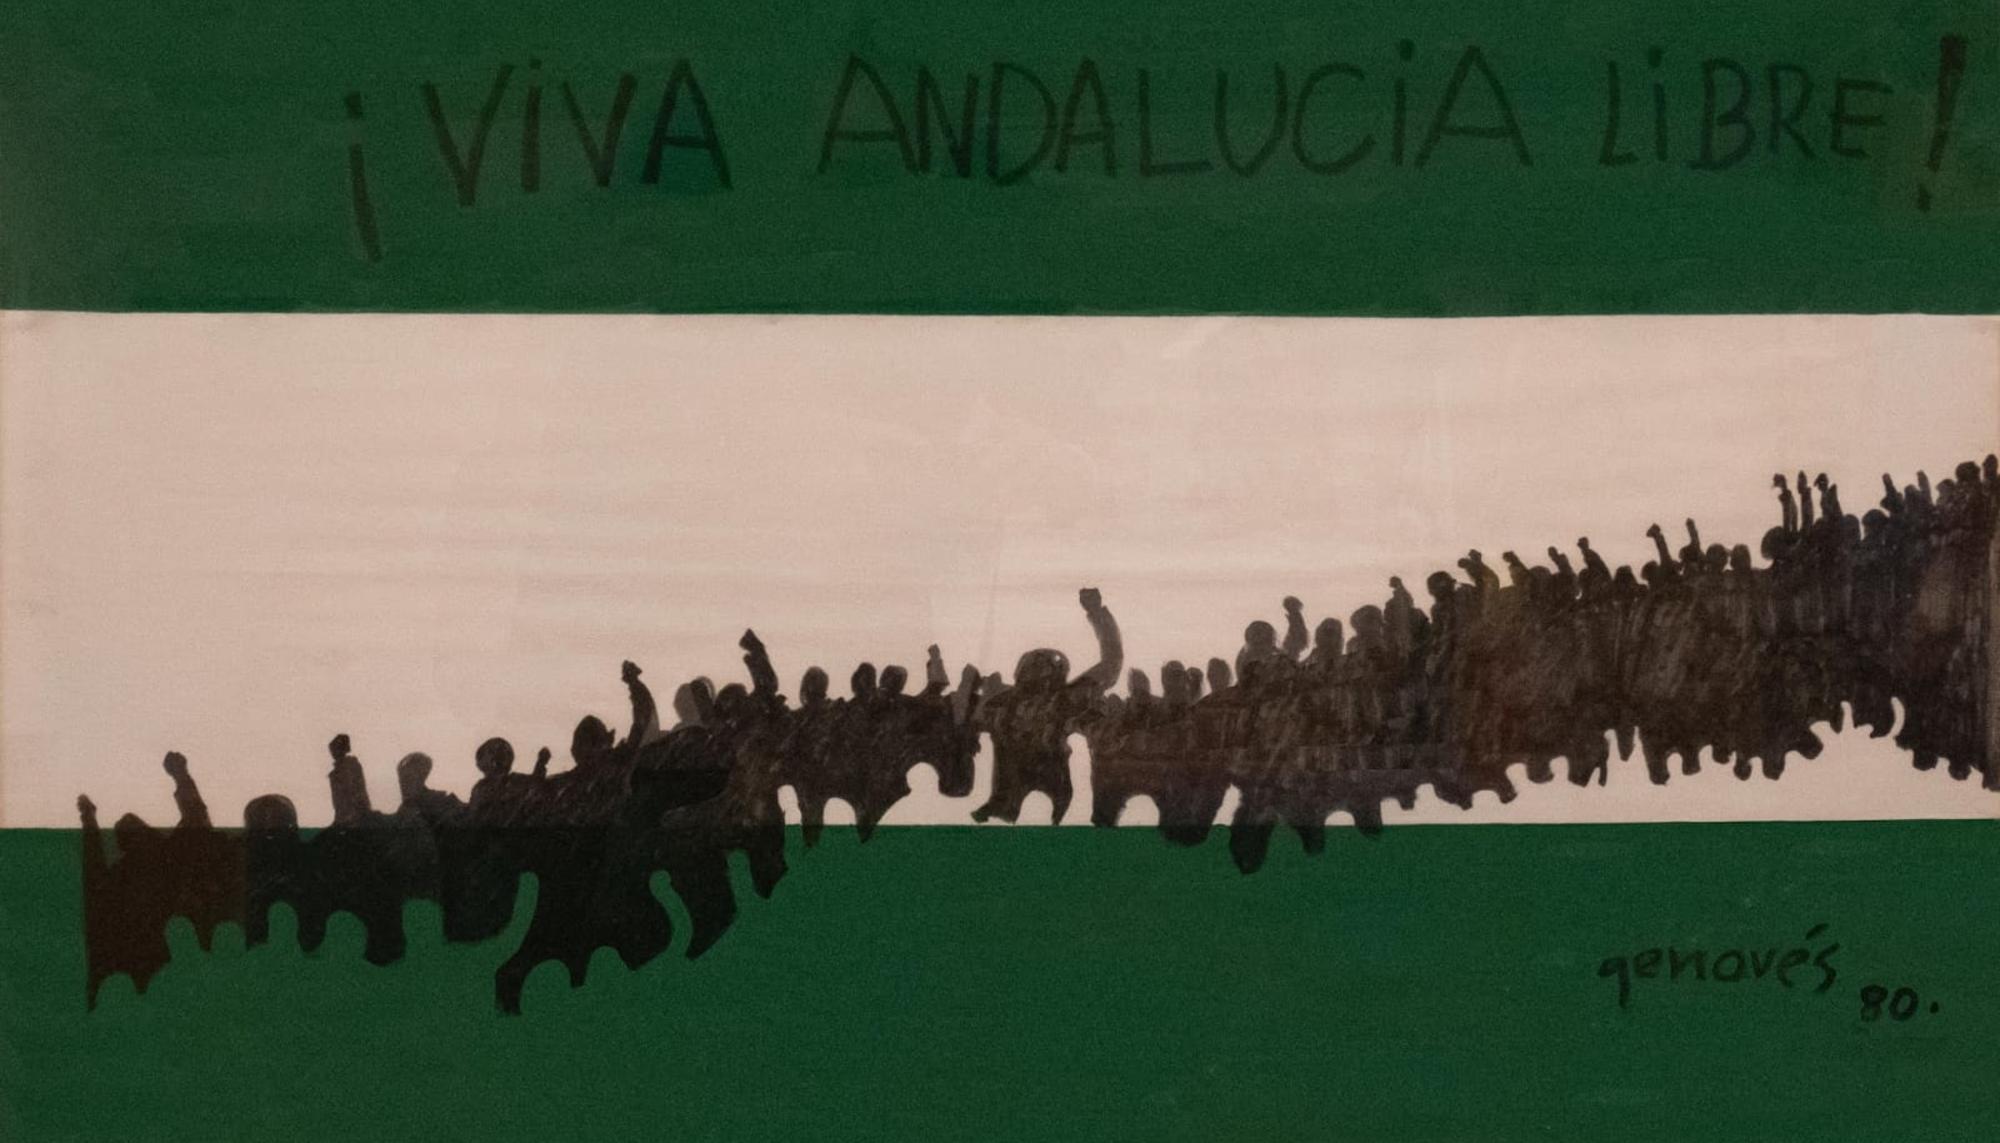 Bandera Andaluza, de Juan Genovés